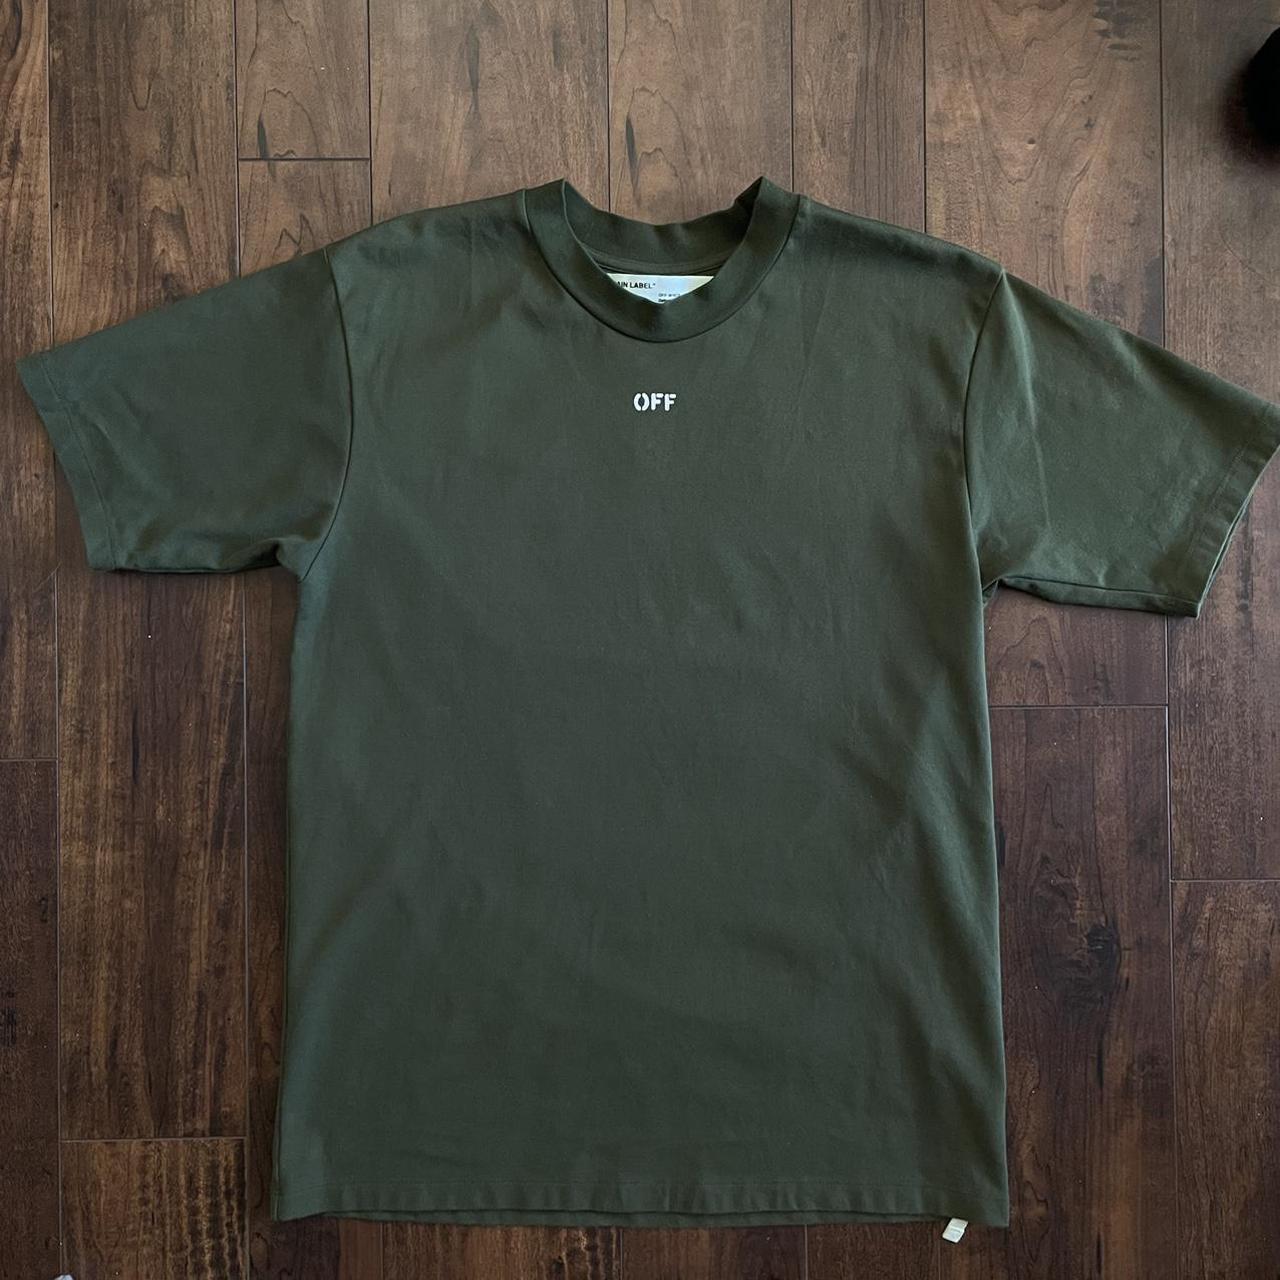 Off White Co Virgil Abloh Velvet Flocked Camouflage T Shirt Green Siz, $285, Barneys New York